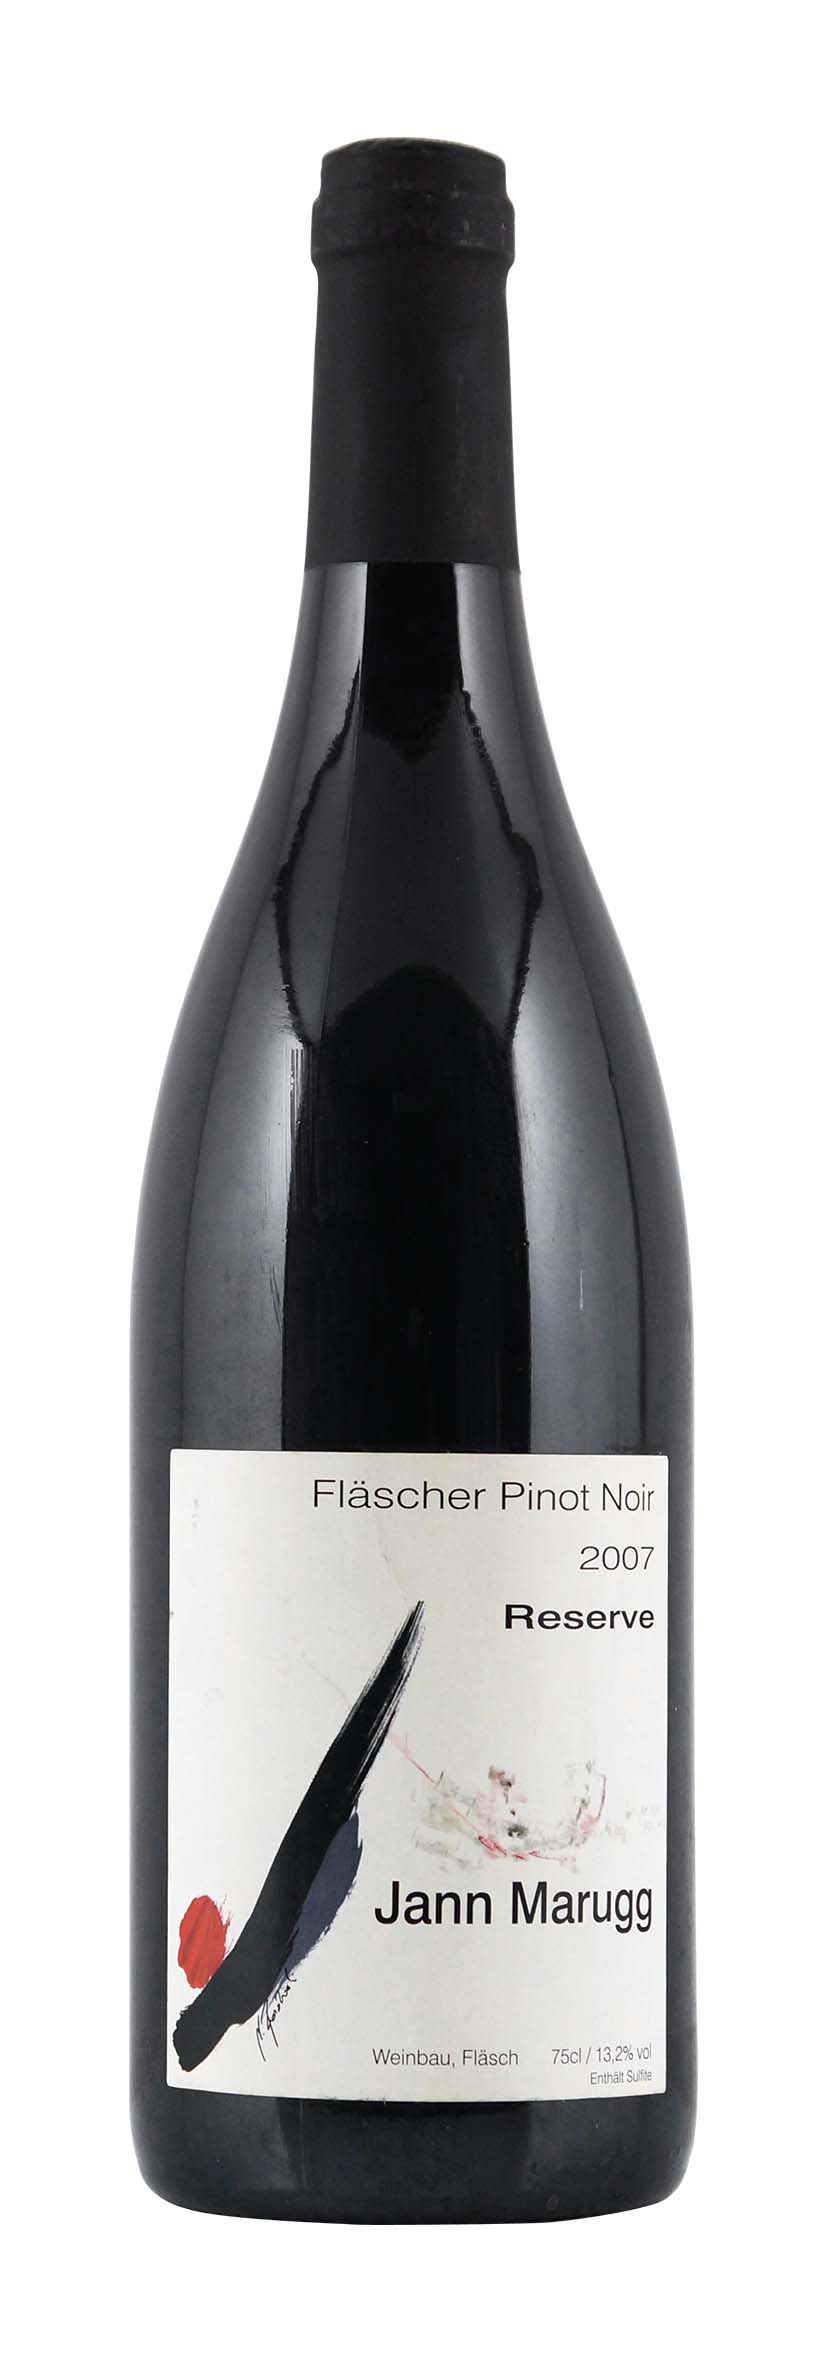 Graubünden AOC Fläscher Pinot Noir Reserve 2007